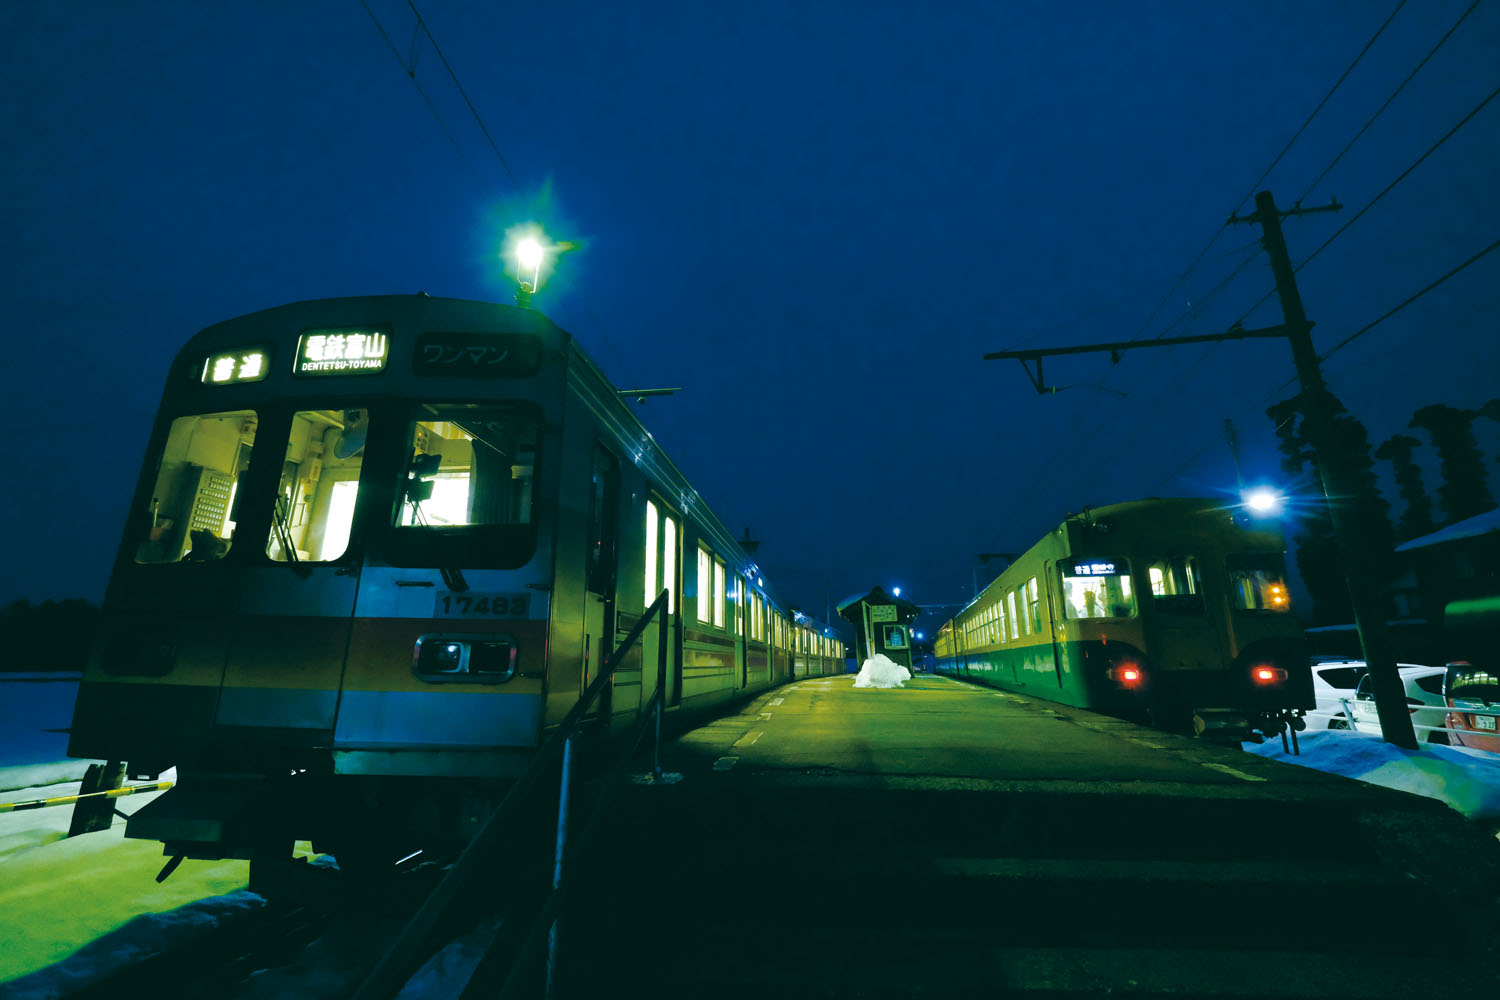 夜の鉄道を撮る 構図を知り 夜闇を使って作品の完成度を高める 夜鉄 第2回 Pictures